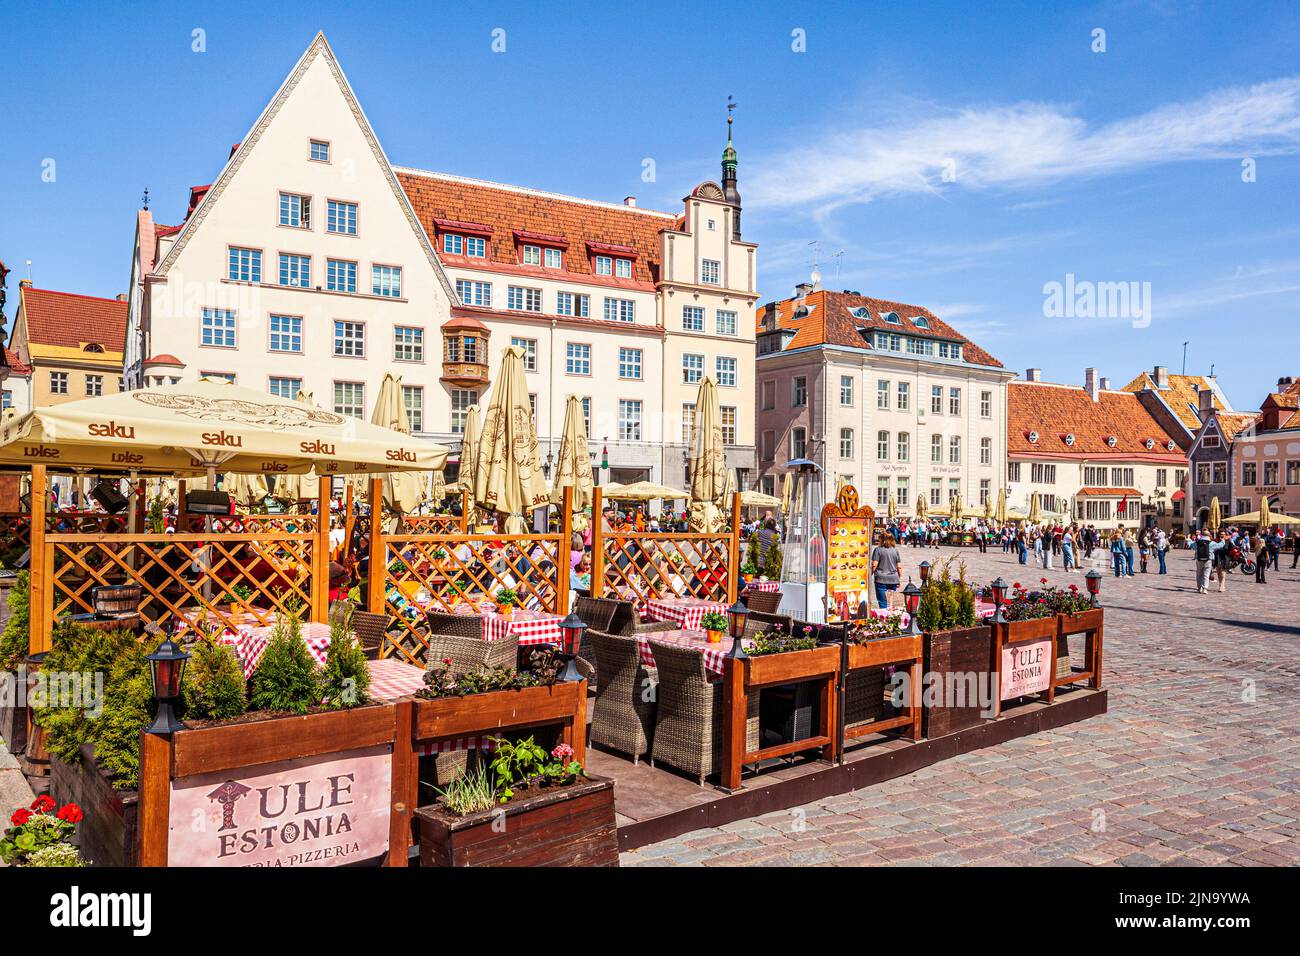 Al aire libre cafés en la bulliciosa Plaza del Ayuntamiento en el casco antiguo de Tallinn, la capital de Estonia Foto de stock